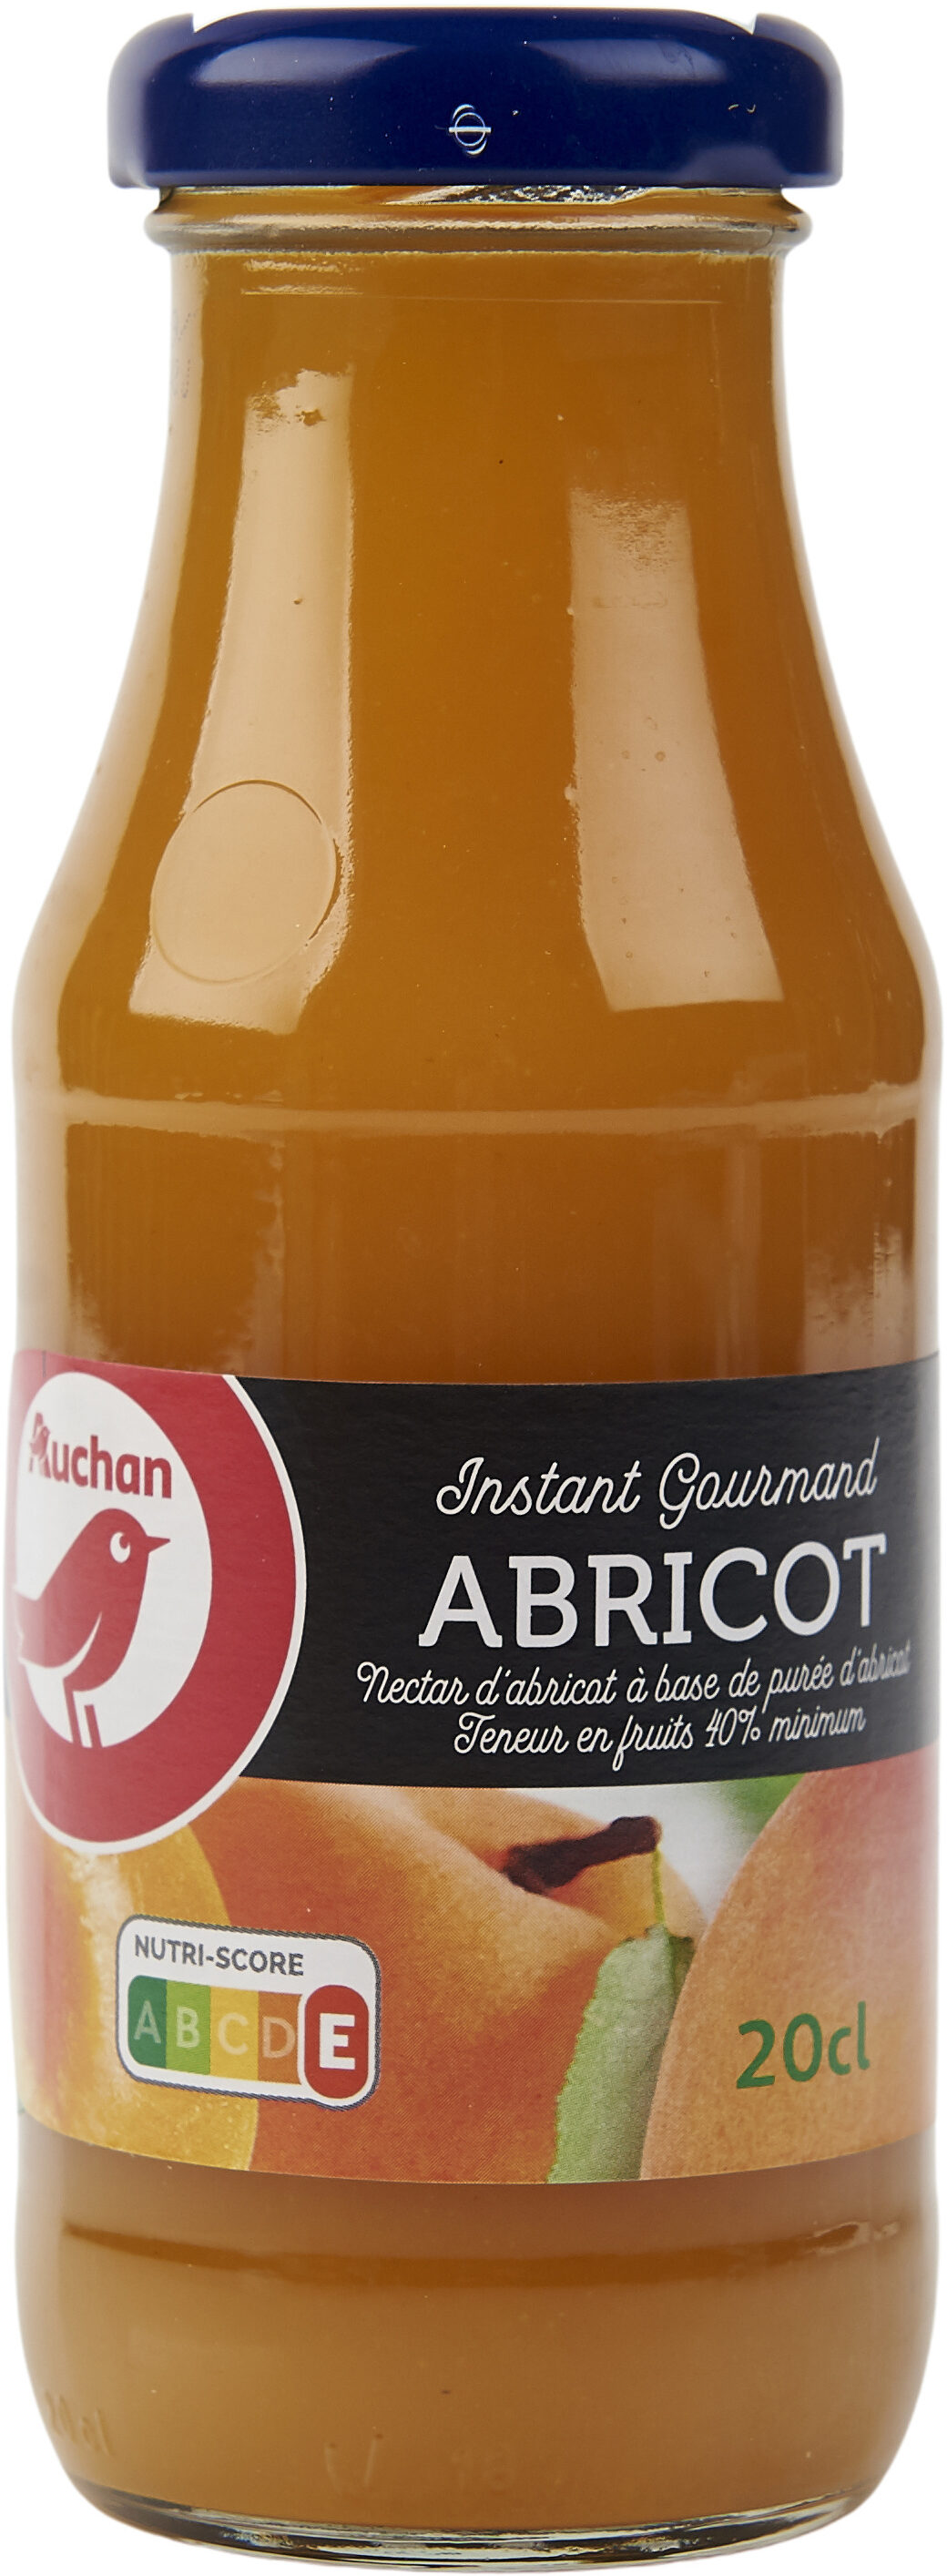 ABRICOT - Nectar d'abricot à base de purée d'abricot. Teneur en fruits : 40% - Produit